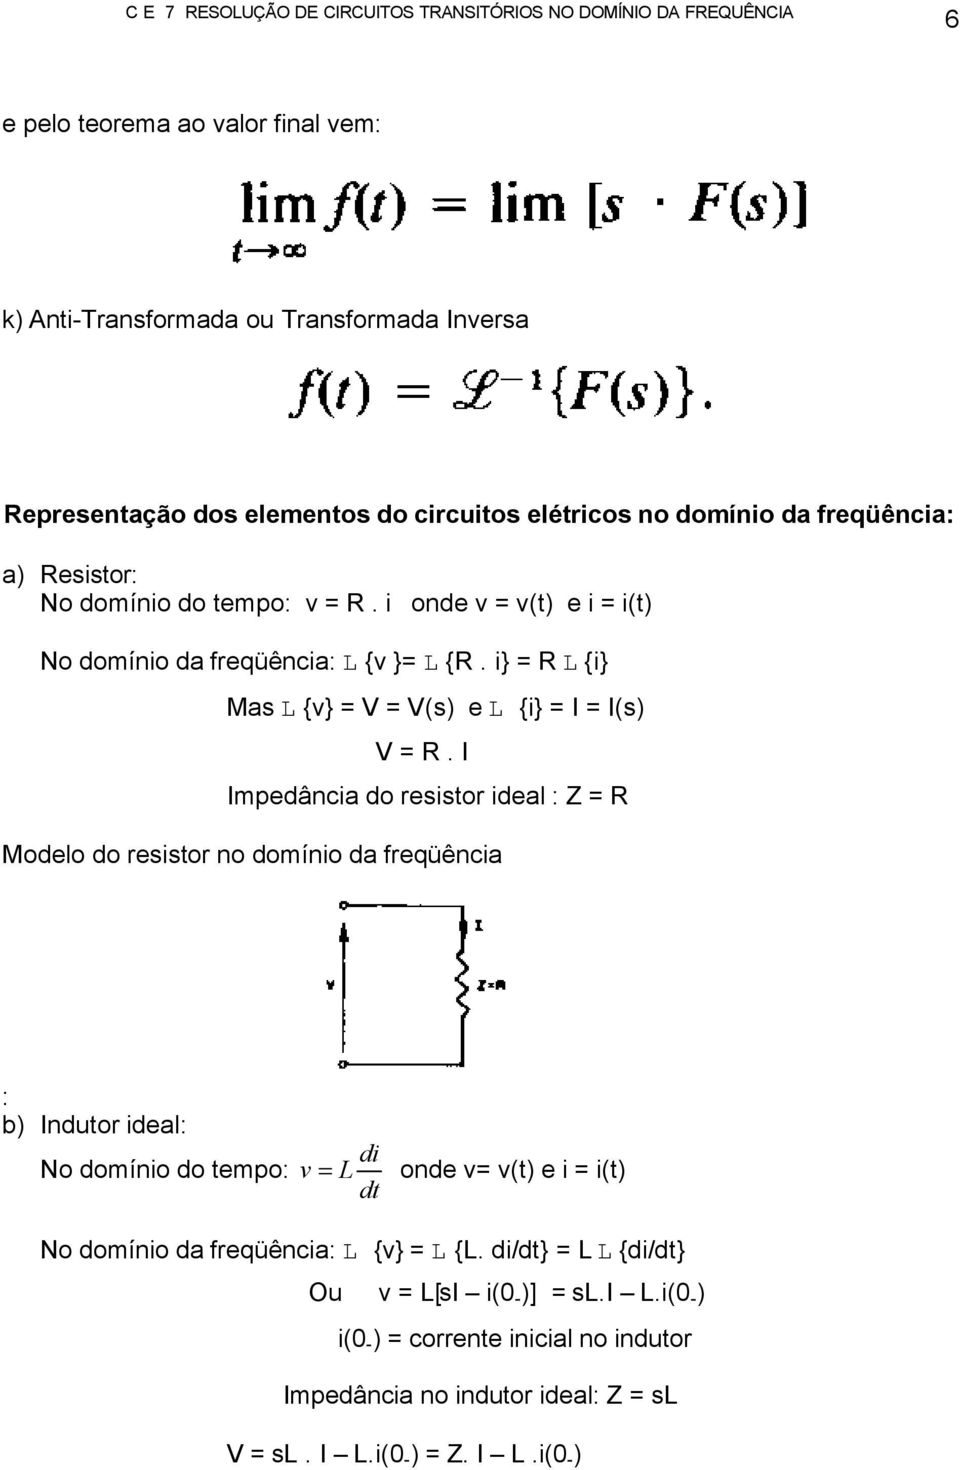 I Impedância do resistor ideal : Z = R Modelo do resistor no domínio da freqüência : b) Indutor ideal: No domínio do tempo: di v = L onde v= v(t) e i = i(t) dt No domínio da